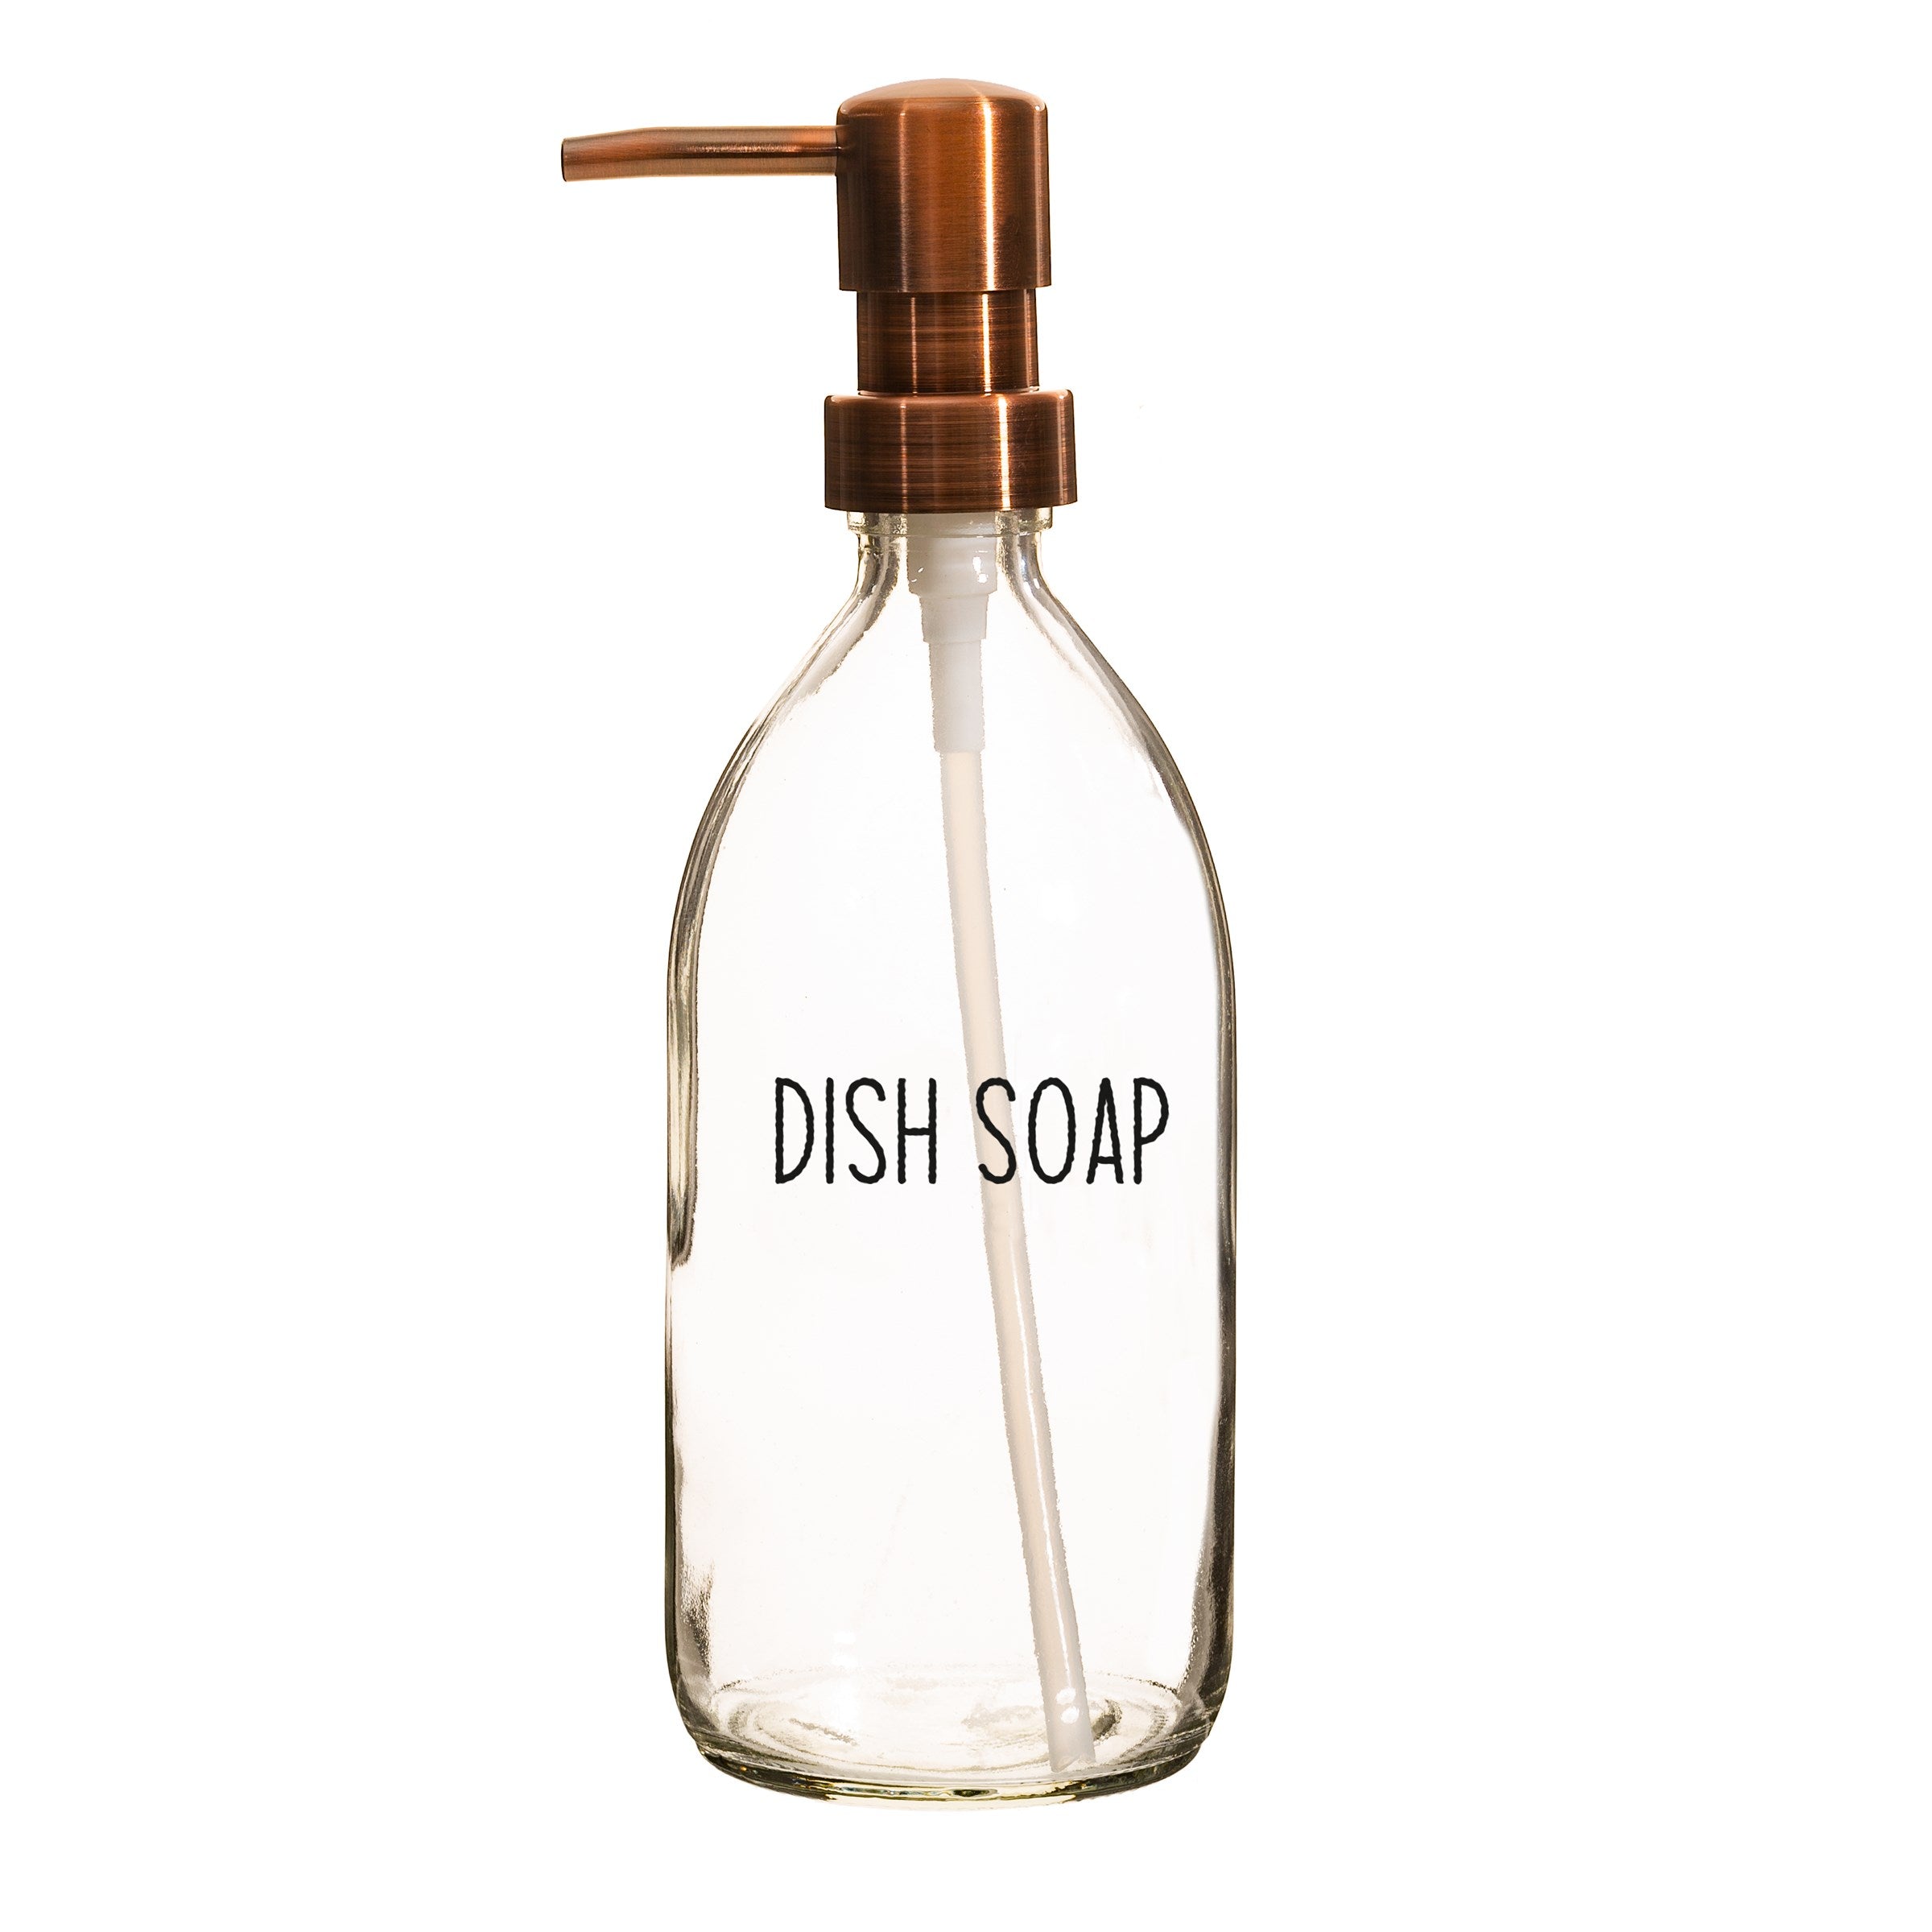 Dish soap refillable bottle